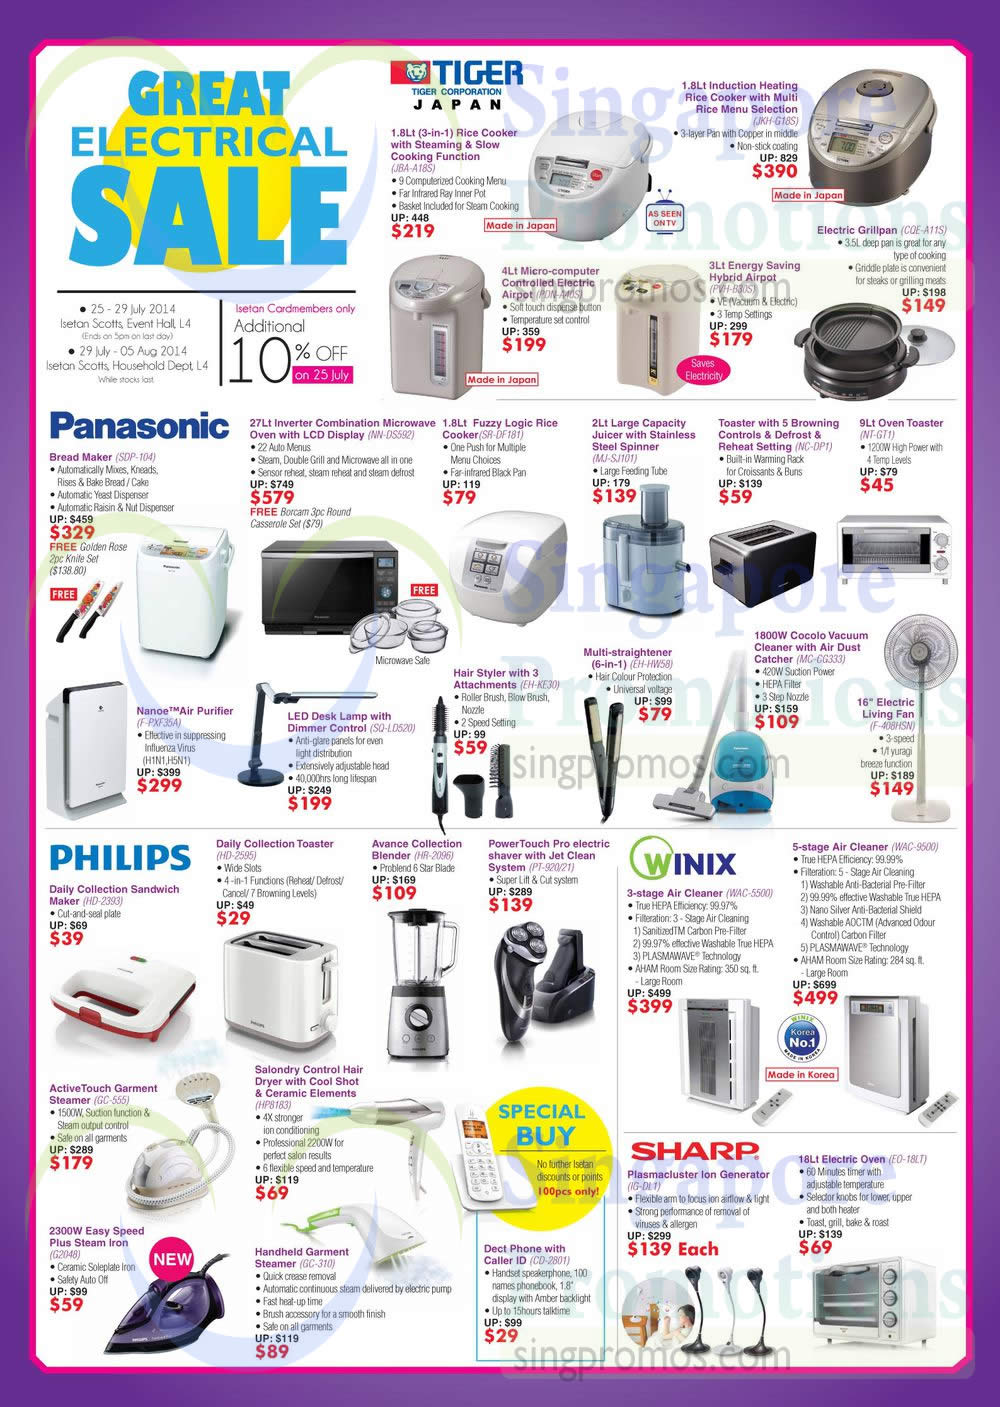 Great-Electrical-Sale-24-Jul-2014.jpg